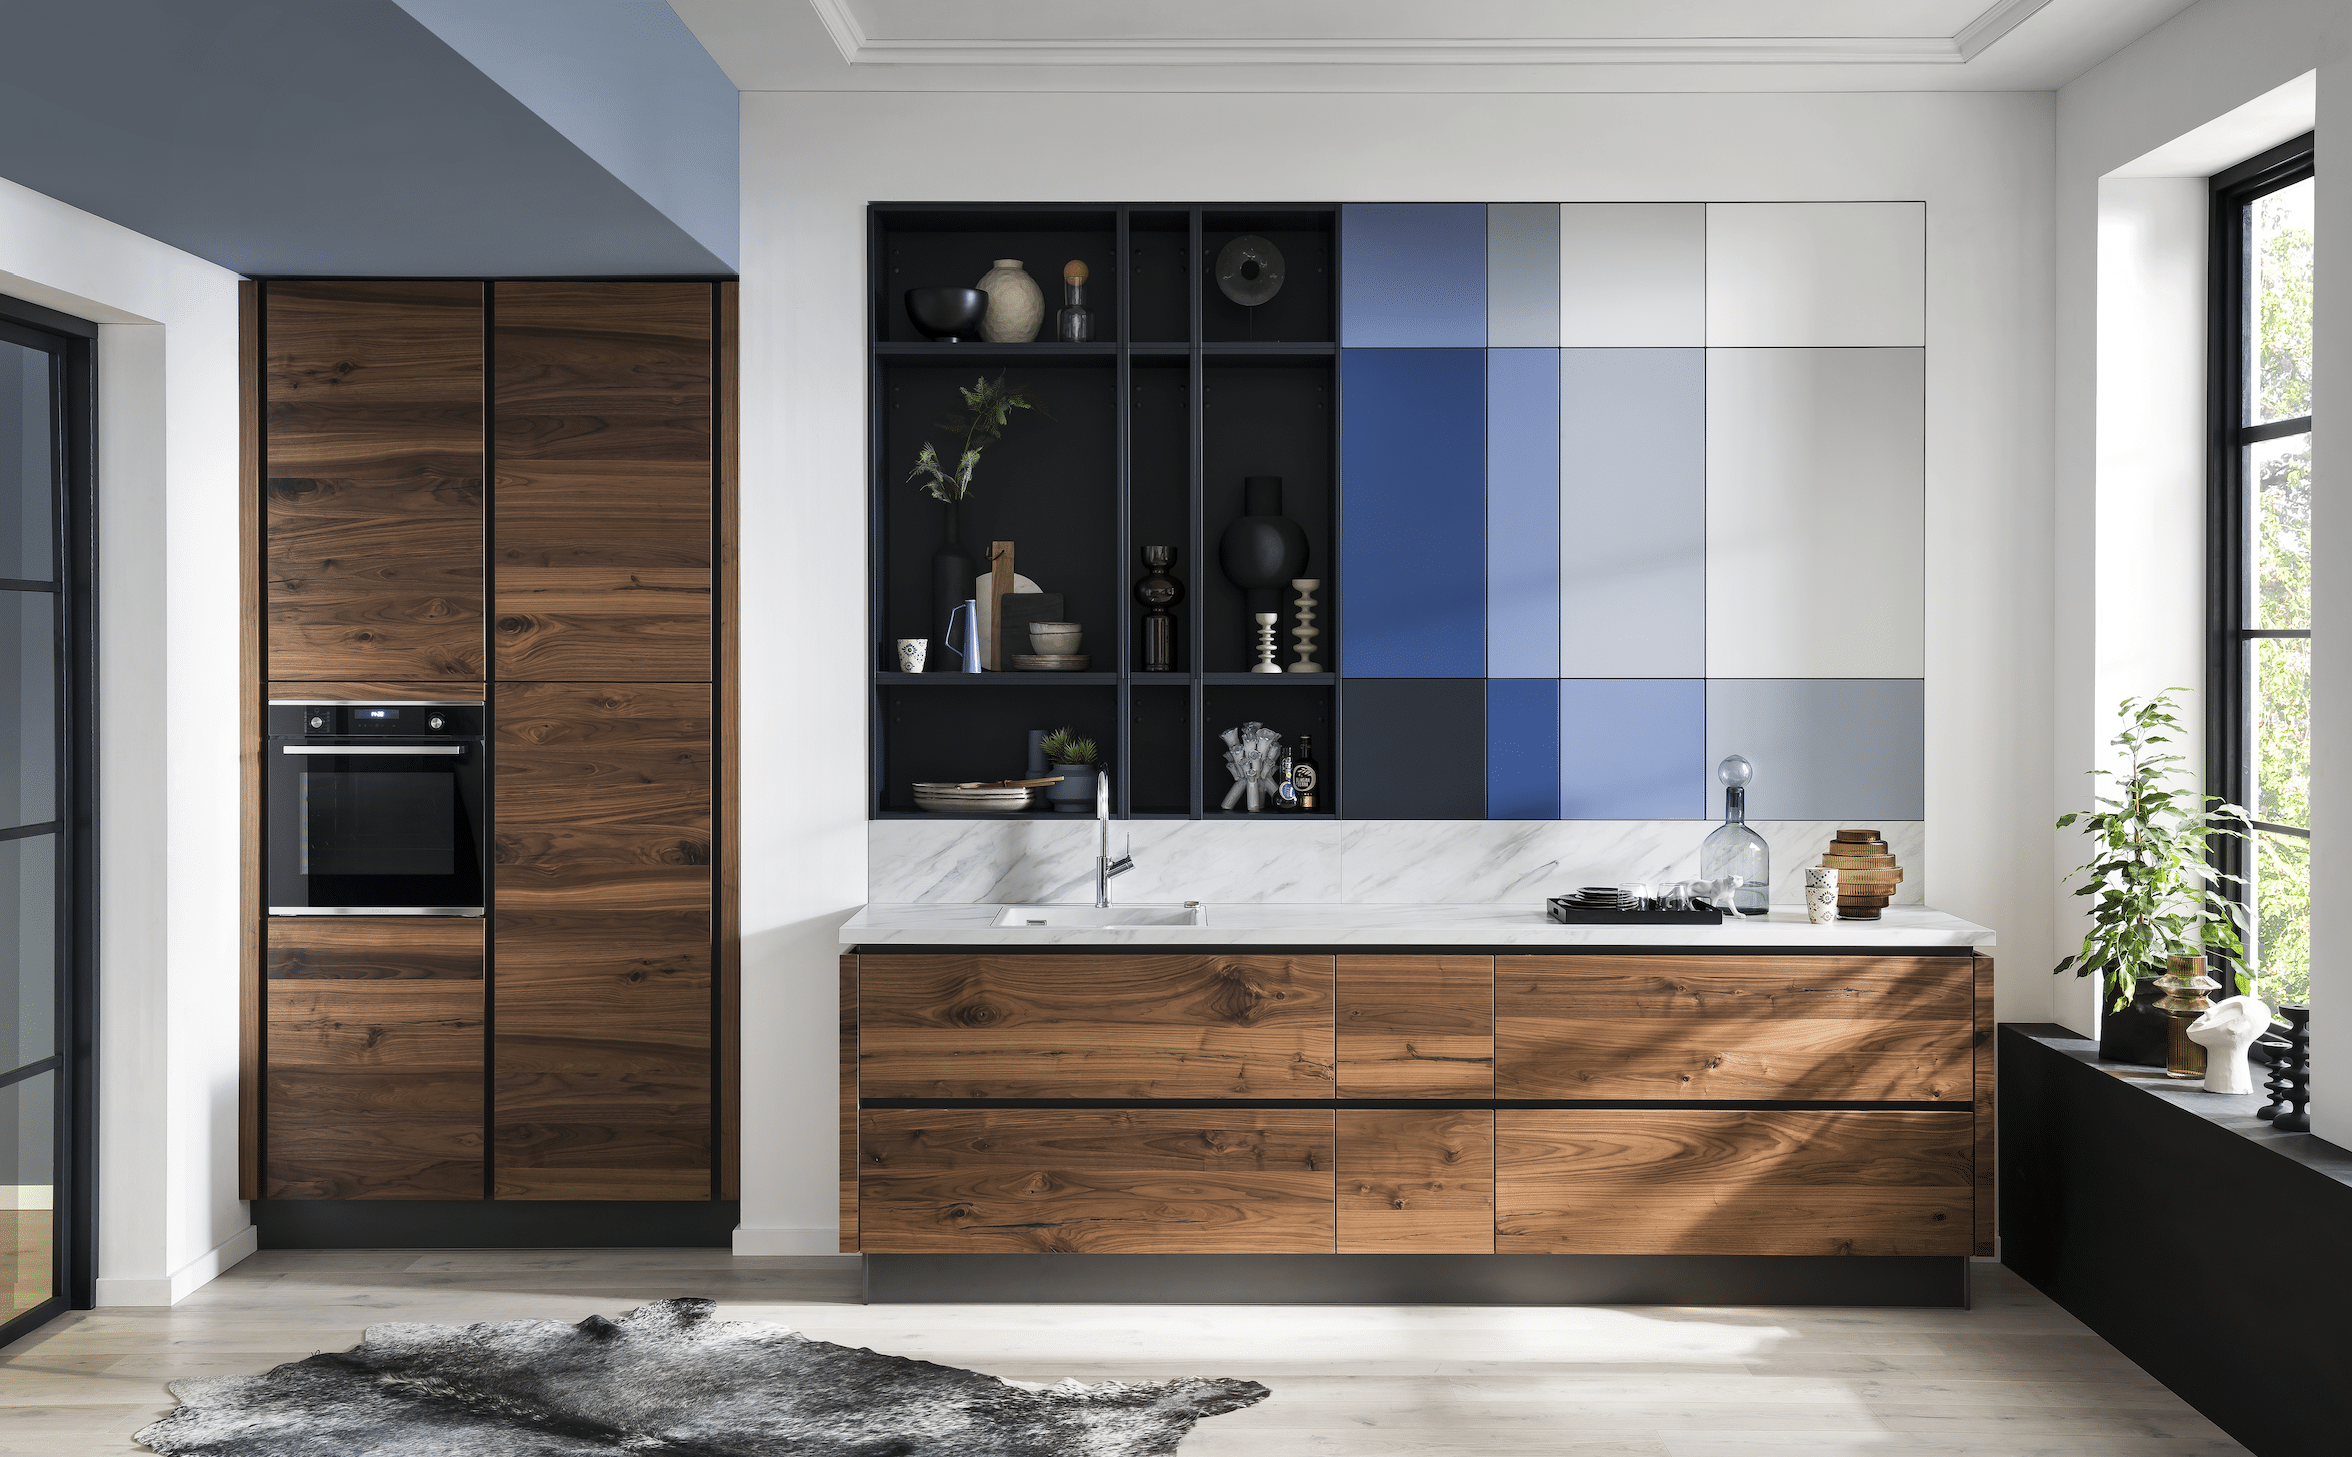 BÖHM MÖBEL zeigt eine Häcker Küche aus Holz, weißen Arbeitsplatten mit Marmorierung, blauen Elementen in der Wand und einem Barhocker.